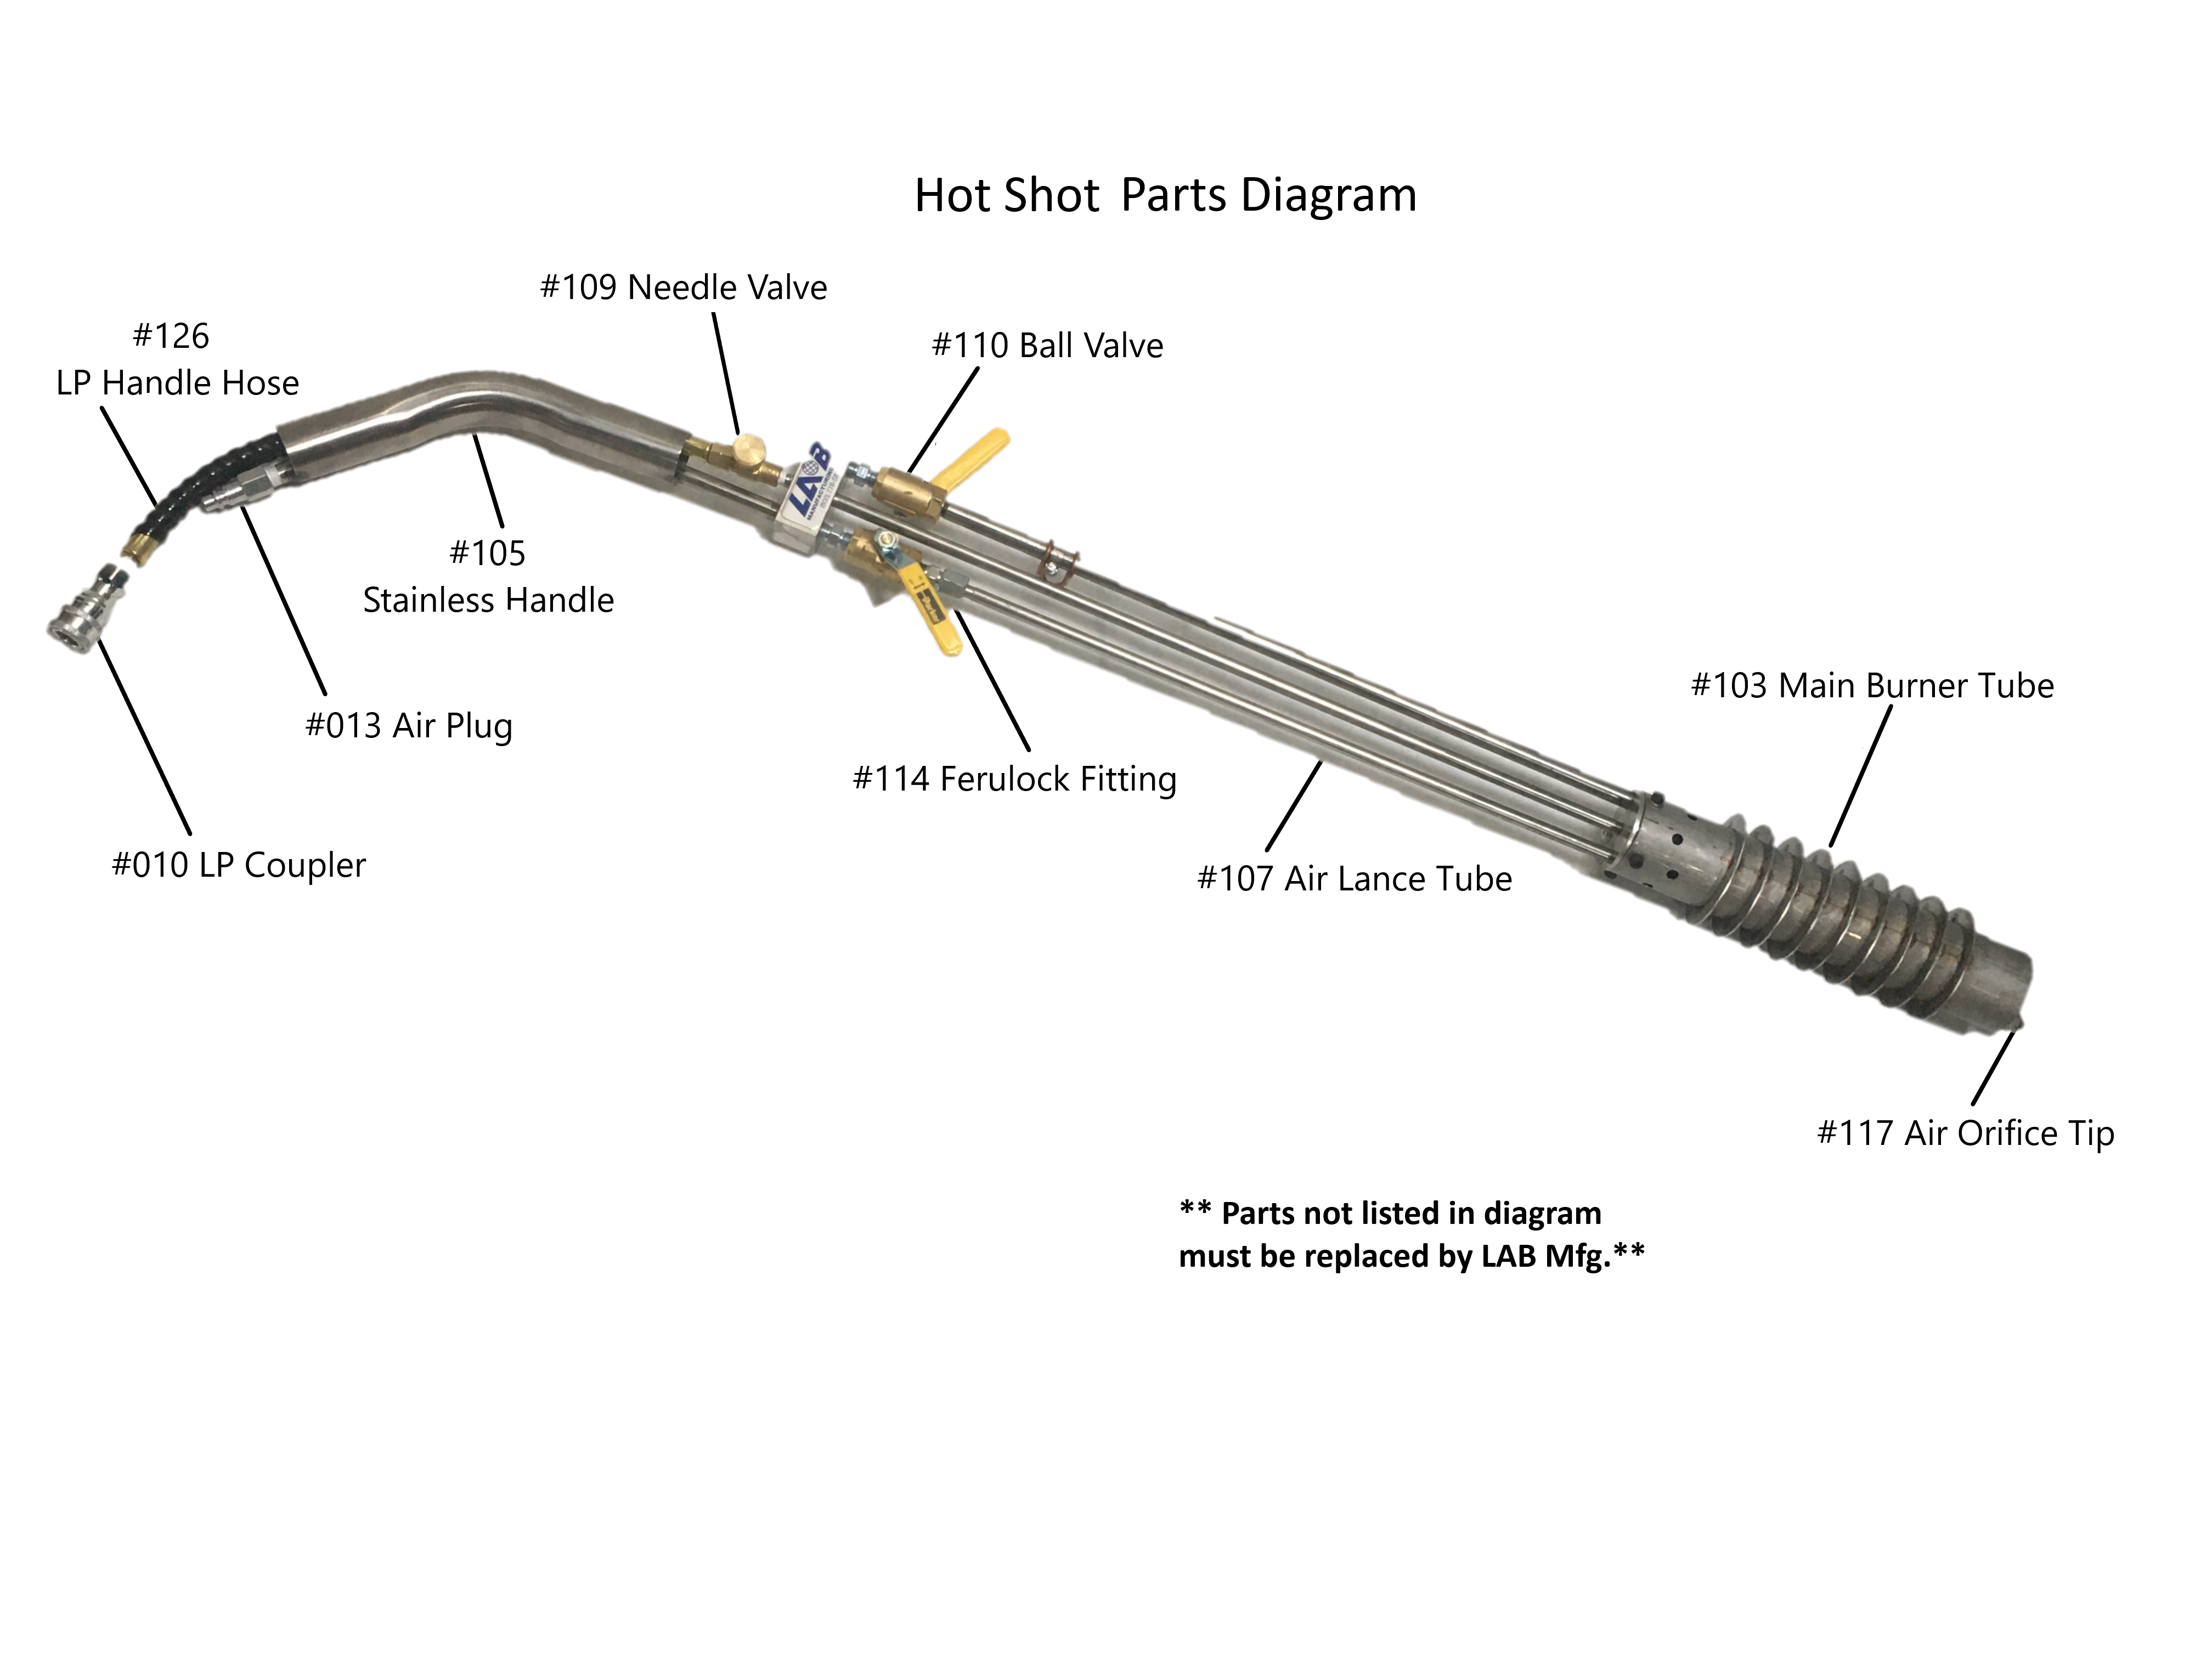 LAB HotShot Parts Diagram